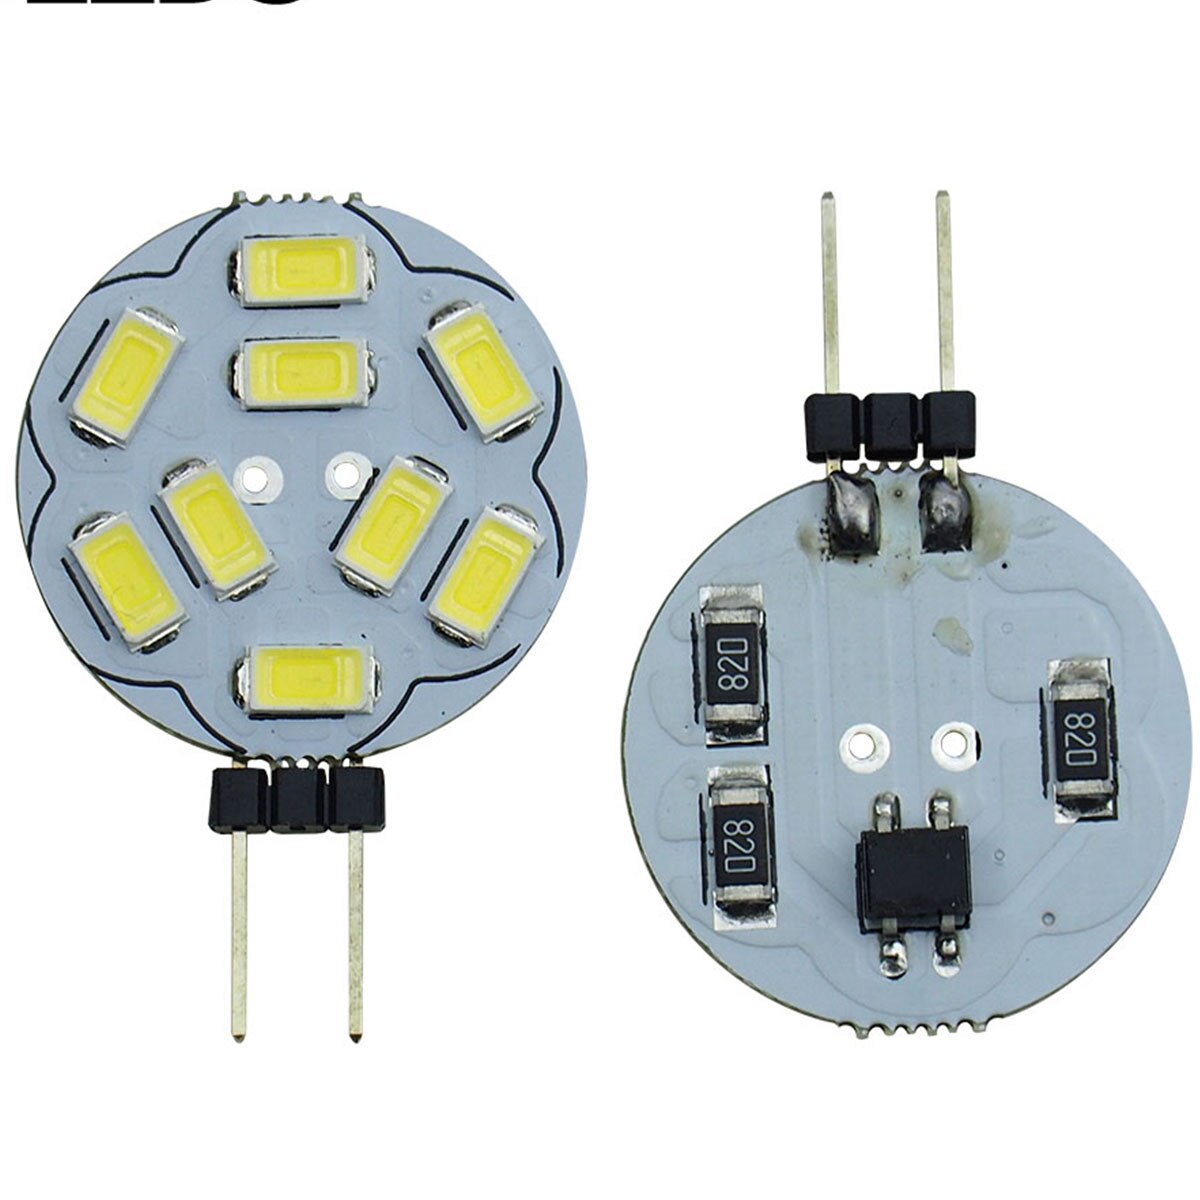 10pcs / lots G4 LED Light Bulbs 9 SMD 5730 AC/DC 12V G4 Bi-Pin Base LED Light Bulb Replacement Halogen Bulb 20W,Cool White 6000K